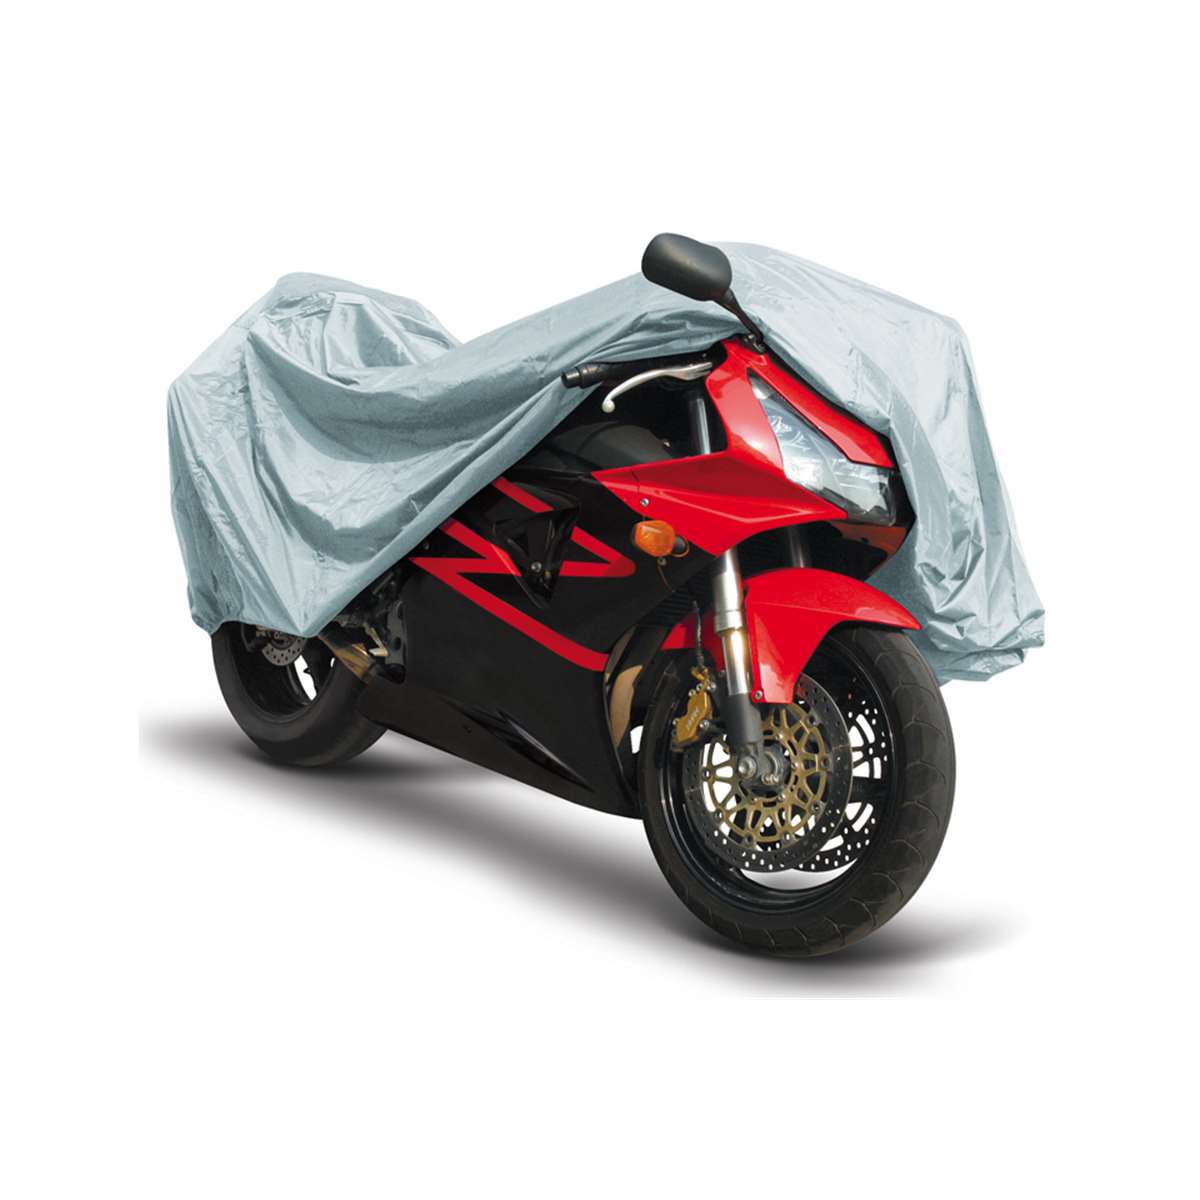 Diverses Technik-Zubehör für dein Motorrad. Moto Mader AG